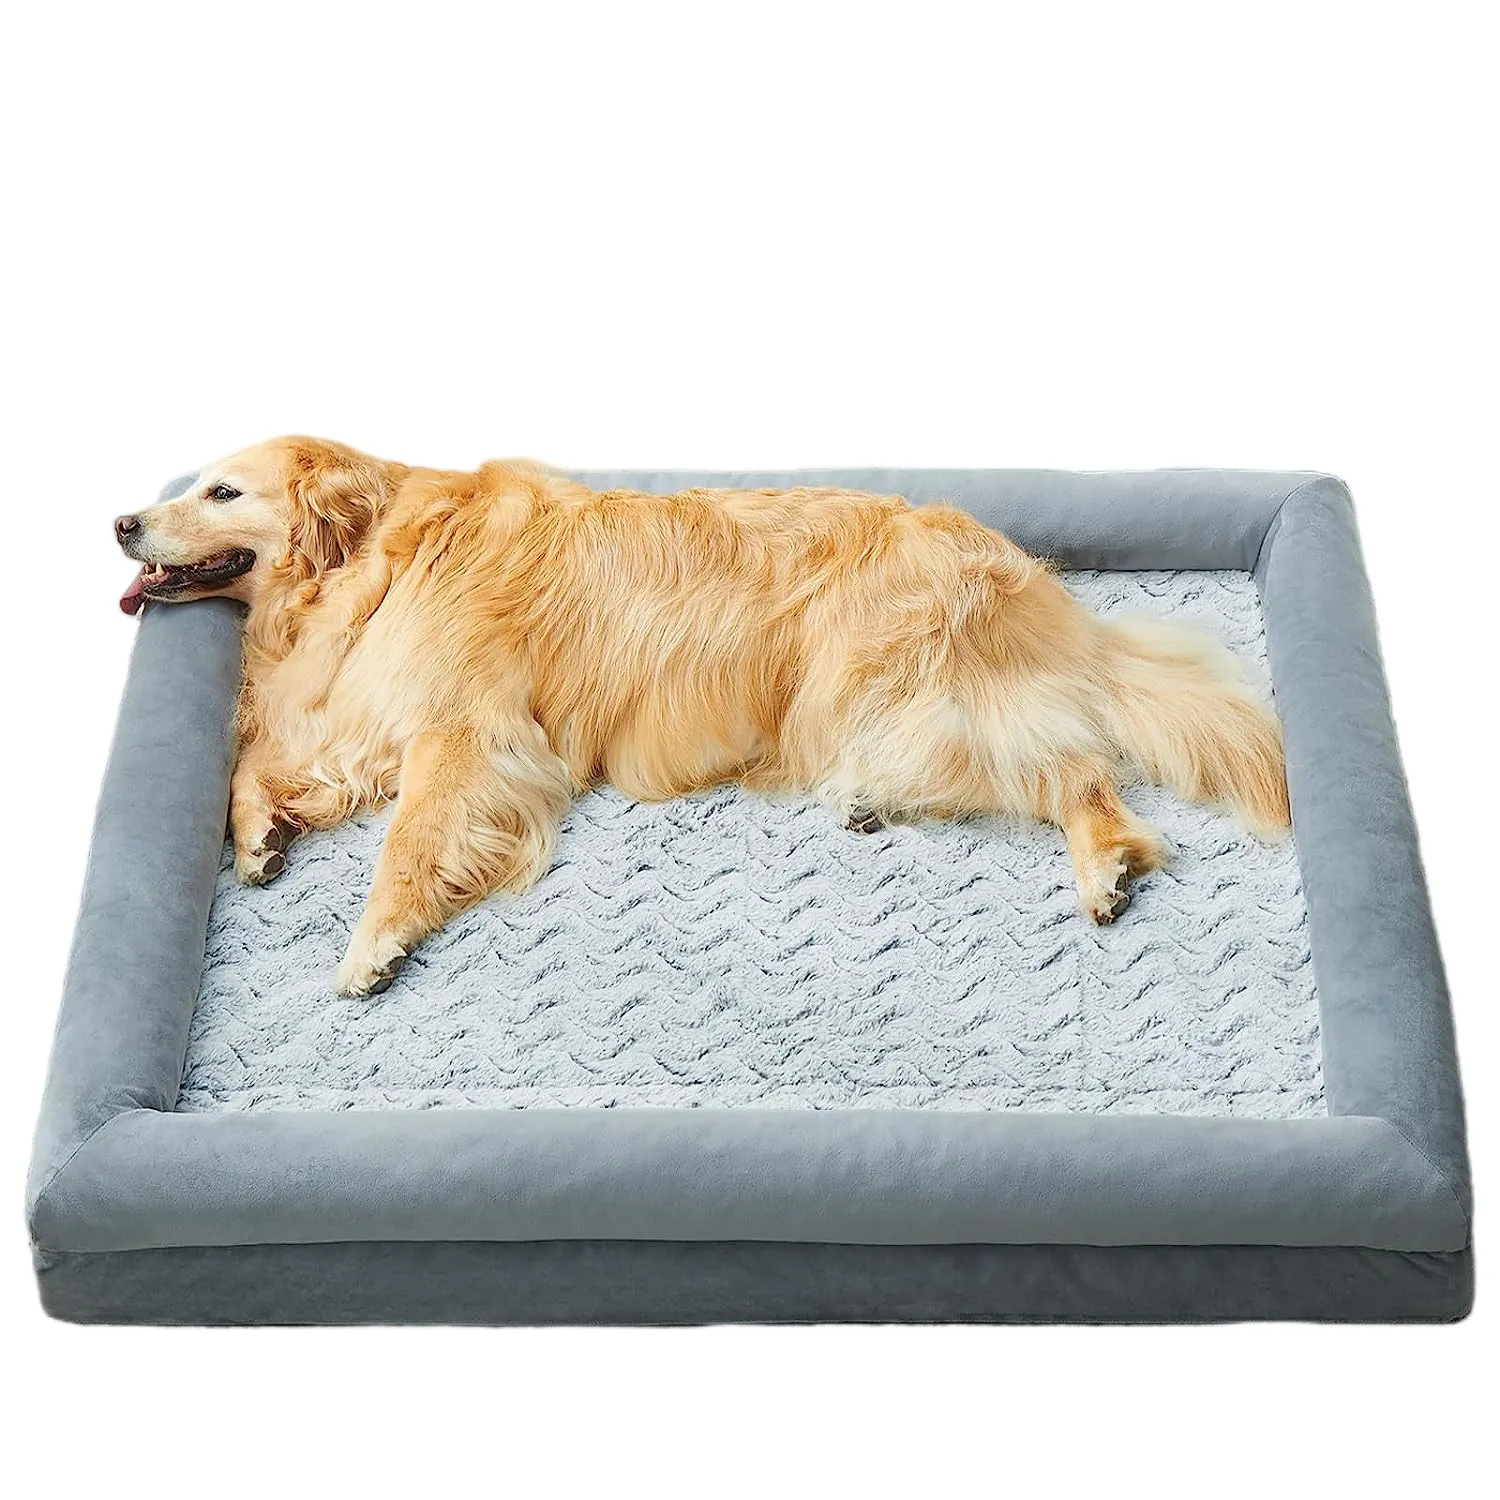 Literas grandes y personalizadas para mascotas, gruesas y elevadas, cómodas camas antideslizantes extraíbles de lujo para perros